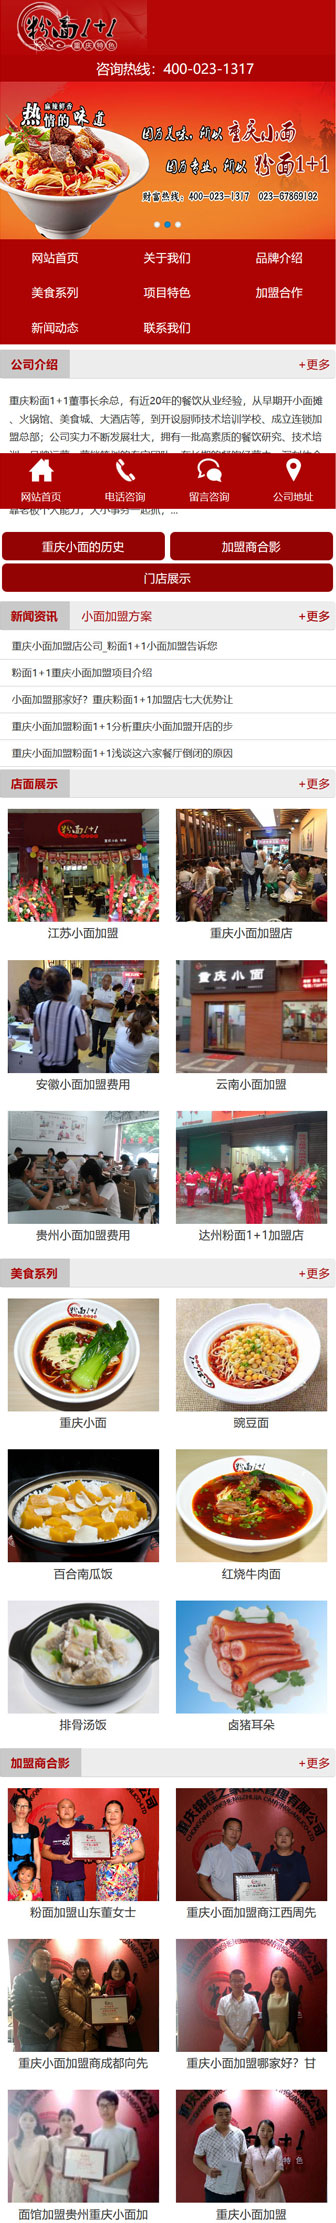 粉面1+1重庆小面加盟公司网站建设案例